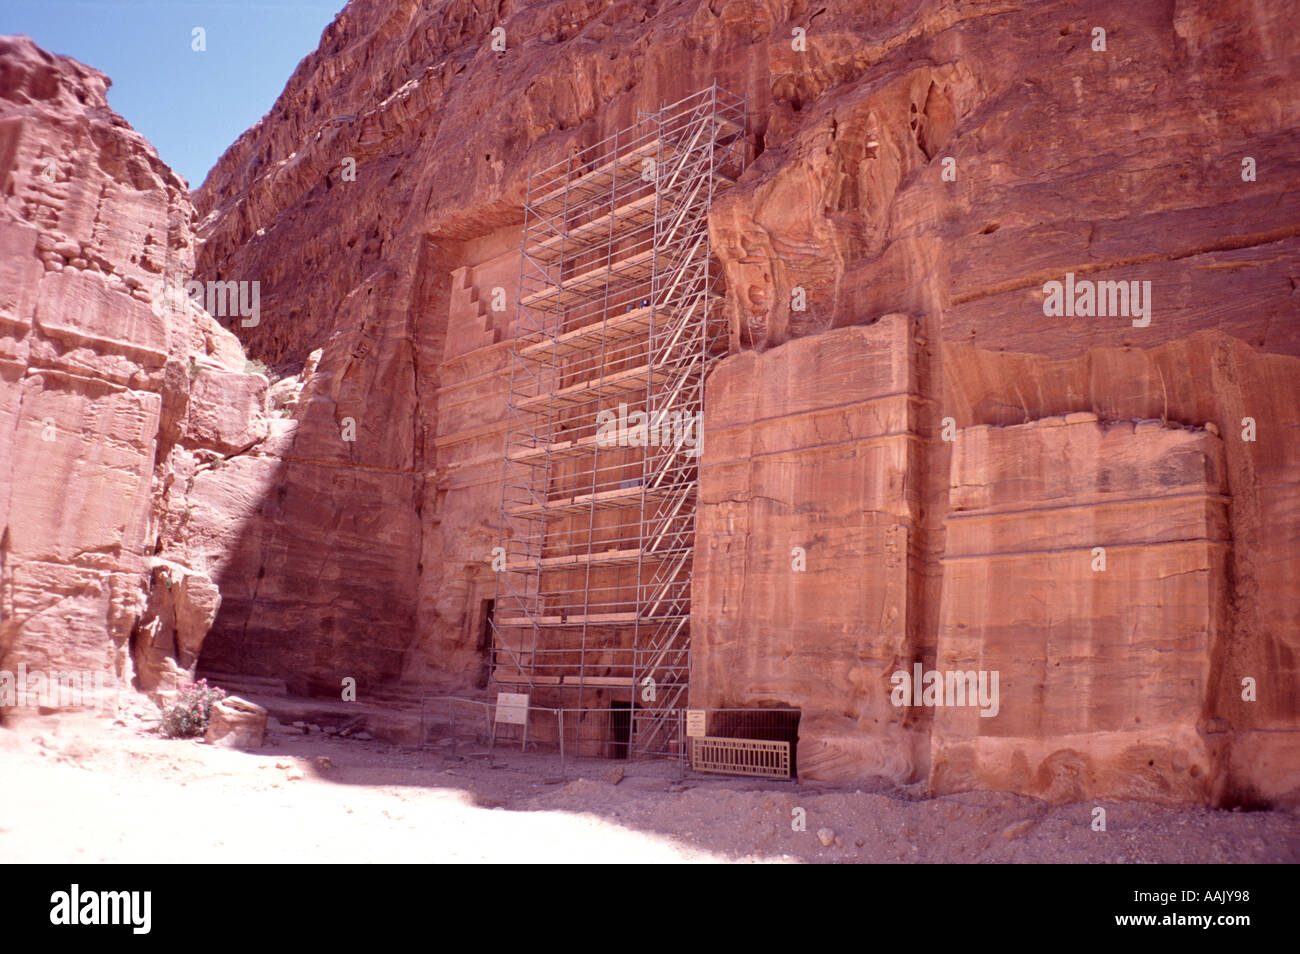 Los antiguos edificios tallados en la roca en la ciudad perdida de Petra, Jordania, siendo restaurada Foto de stock